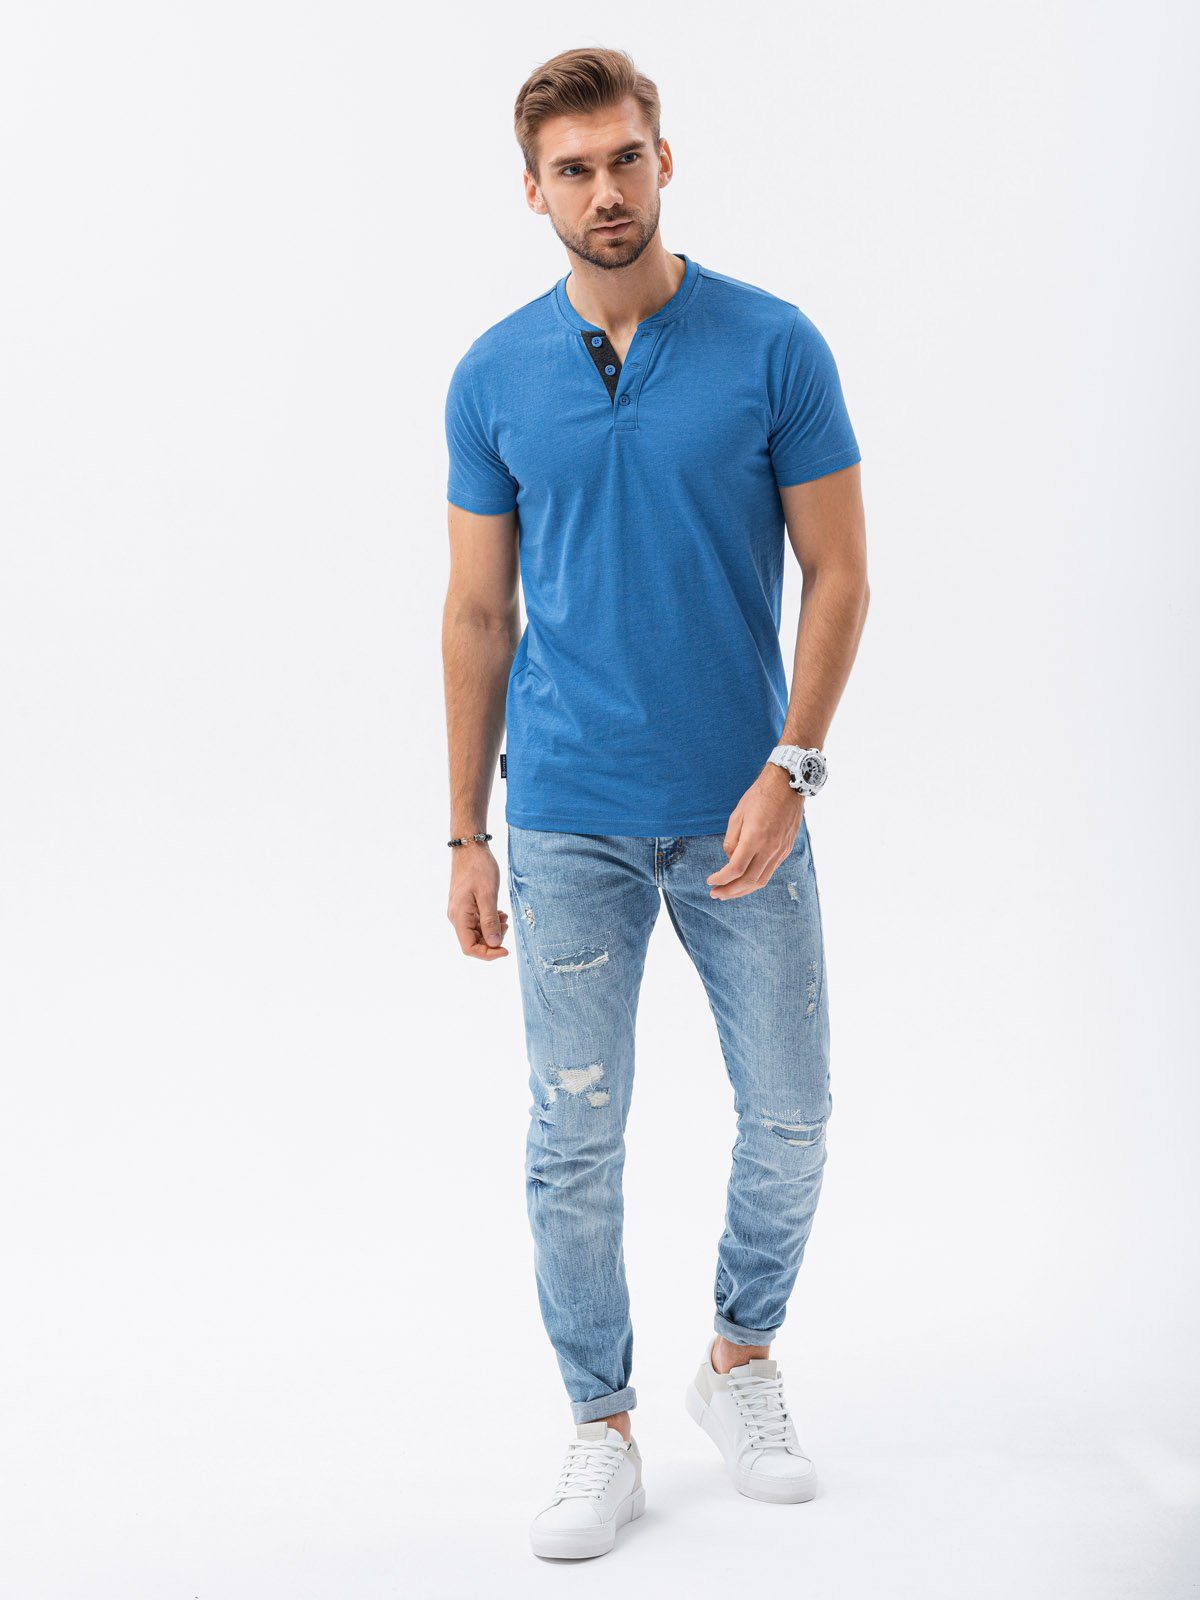 OMBRE T-Shirt Unifarbenes Herren-T-Shirt meliert blau S1390 S 